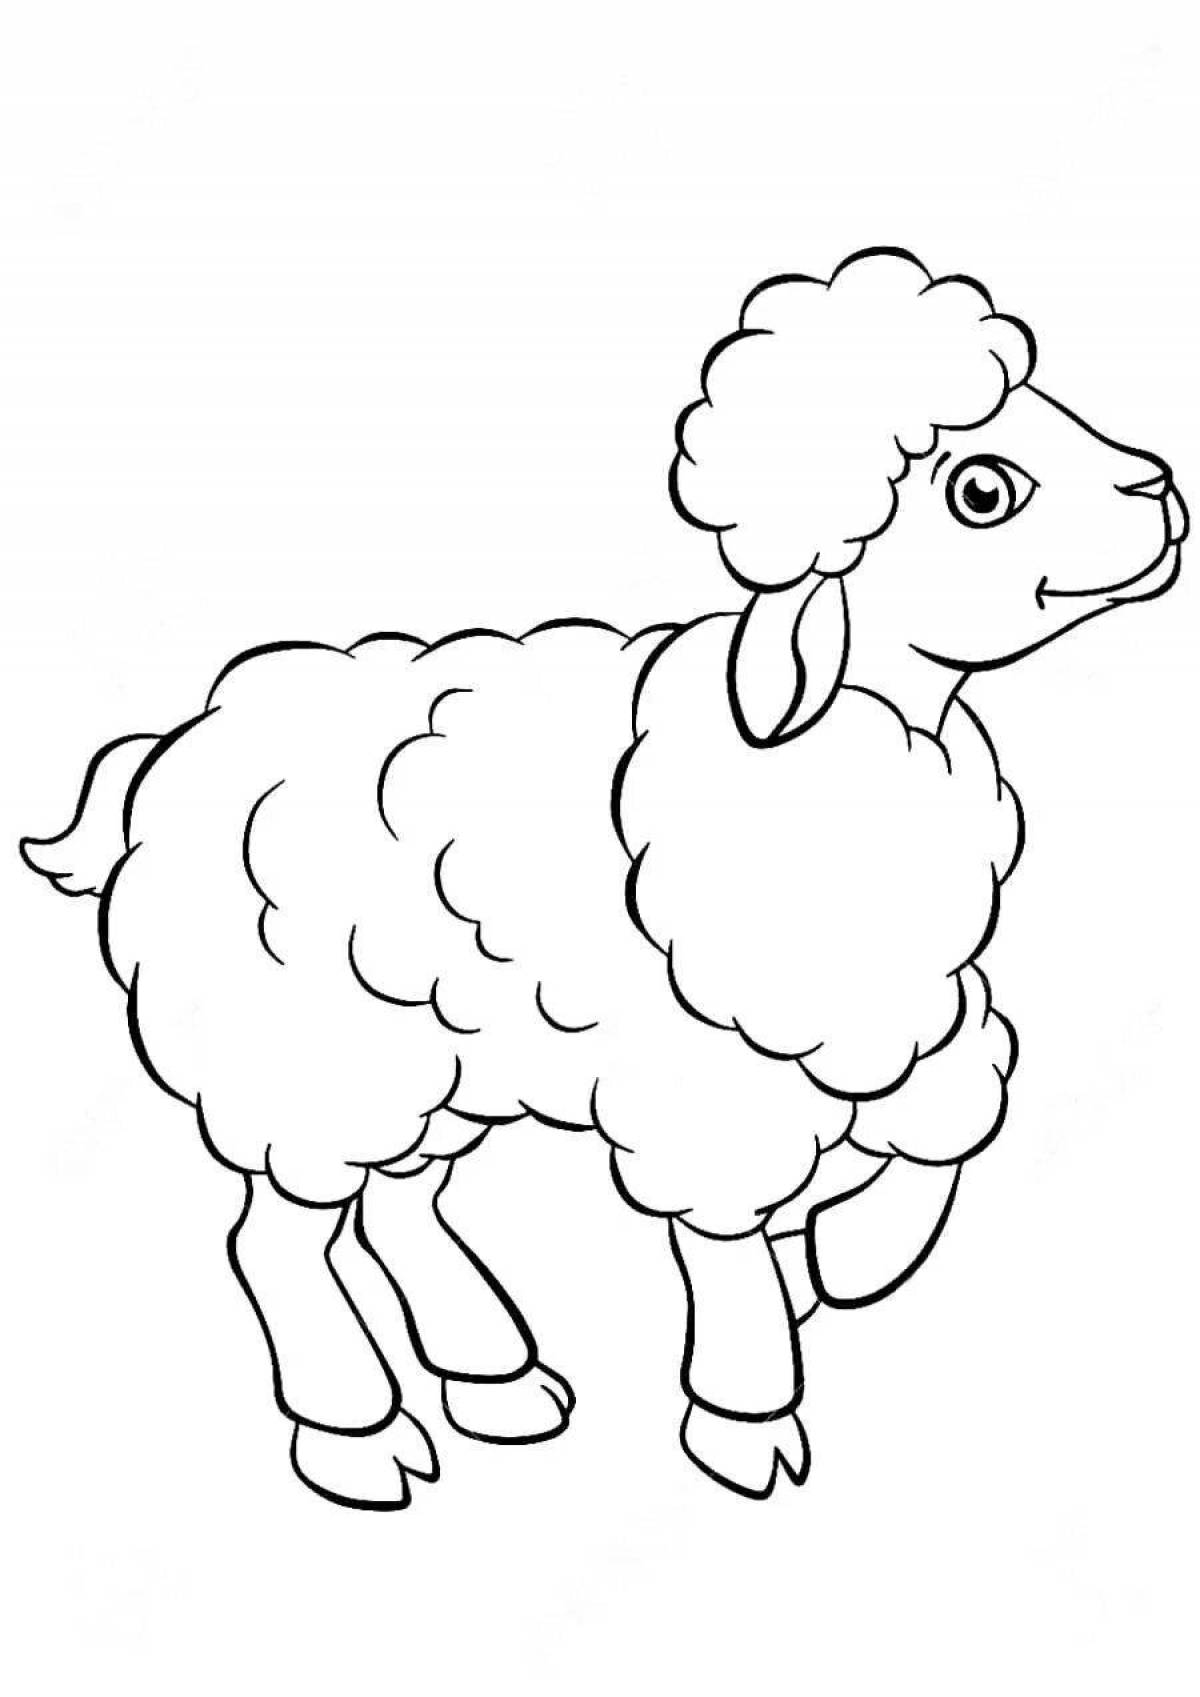 Fun coloring book lamb for kids